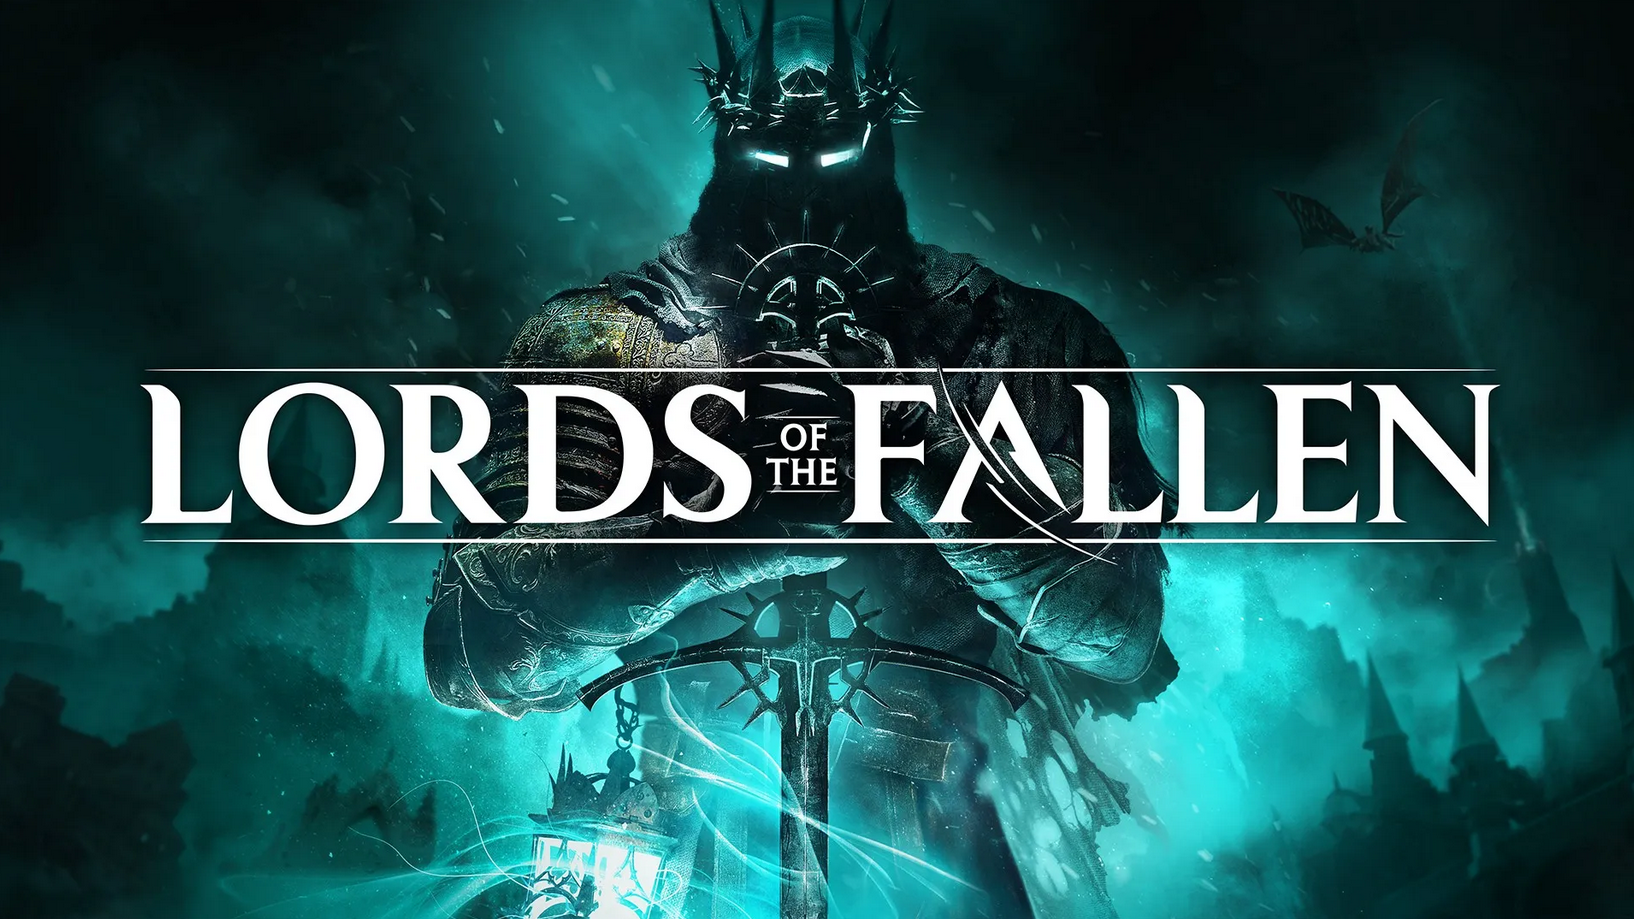 Compare Lords of the Fallen rodando no PS5 vs Xbox Series